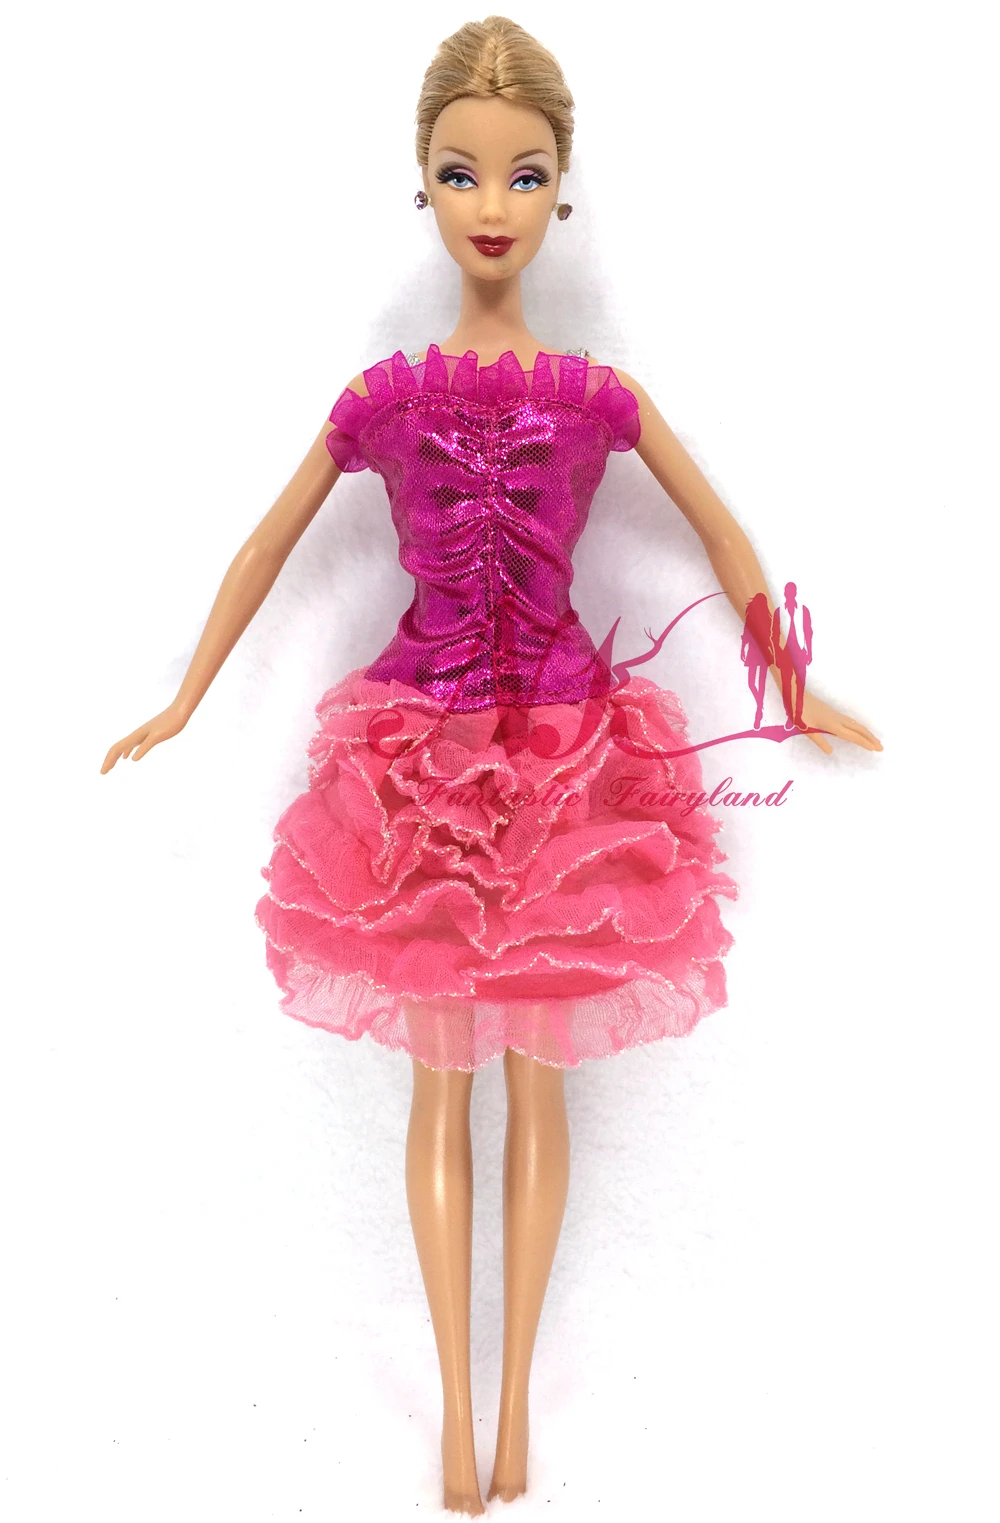 Нагорный Карабах 10 компл./лот в случайном порядке смешивания Стиль Новые платье куклы красивая праздничная одежда популярное модное платье для куклы Барби Best девочки подарок